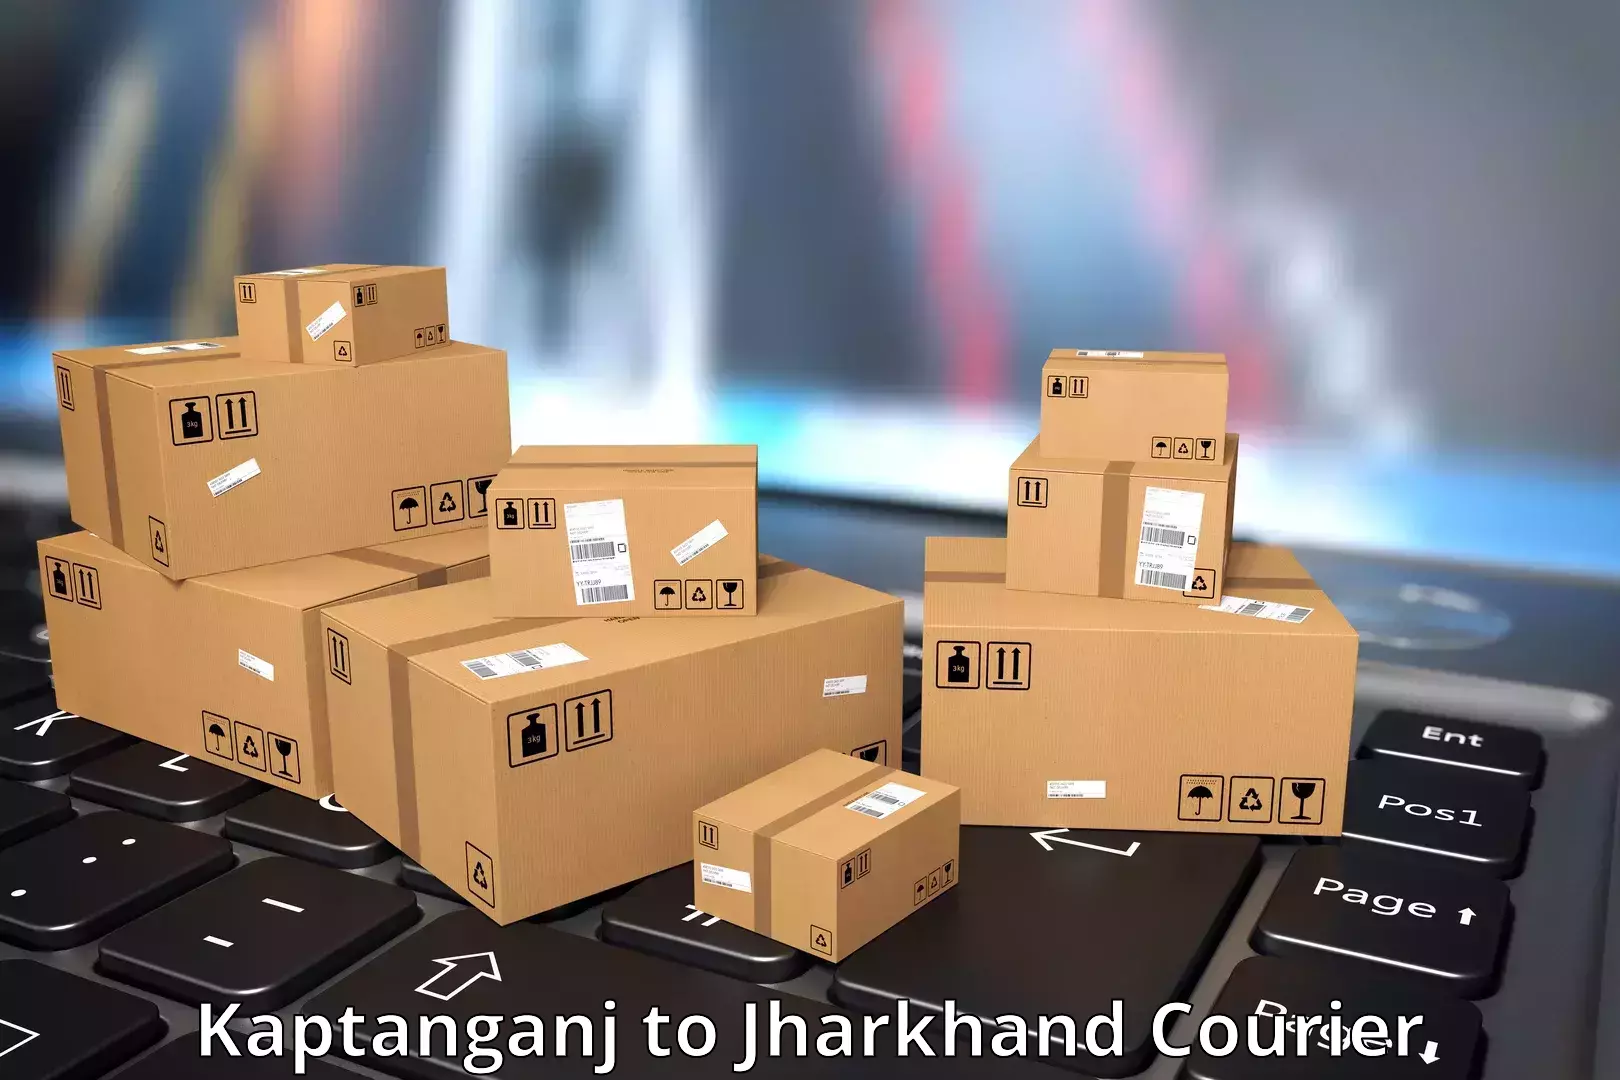 Express package handling Kaptanganj to Jagannathpur